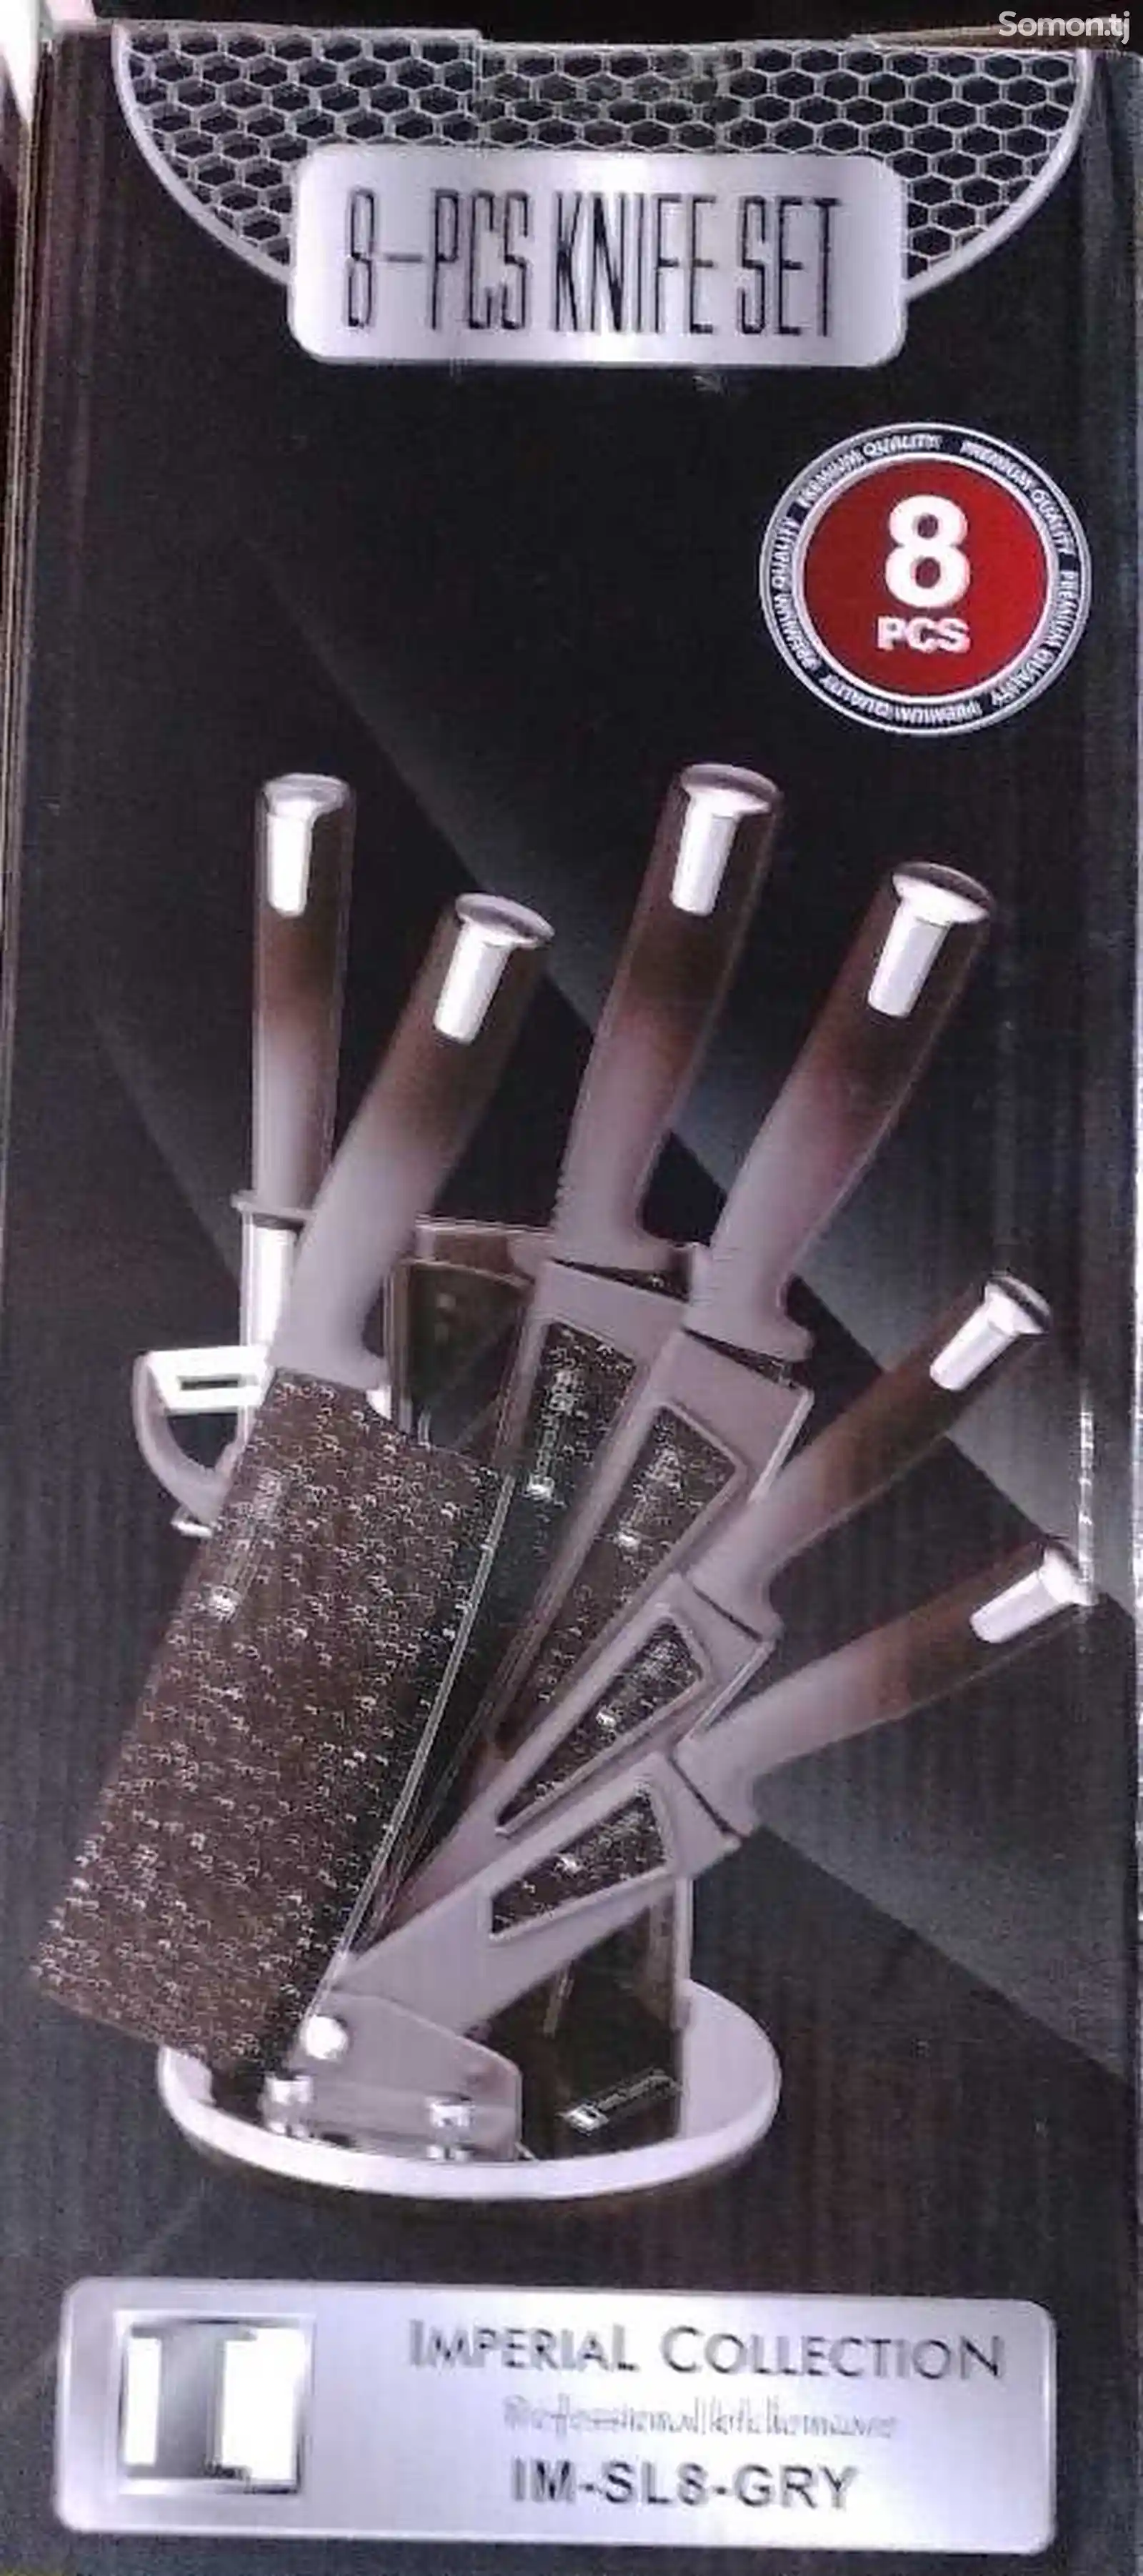 Наборы кухонных ножей IM-SL-8 GRY